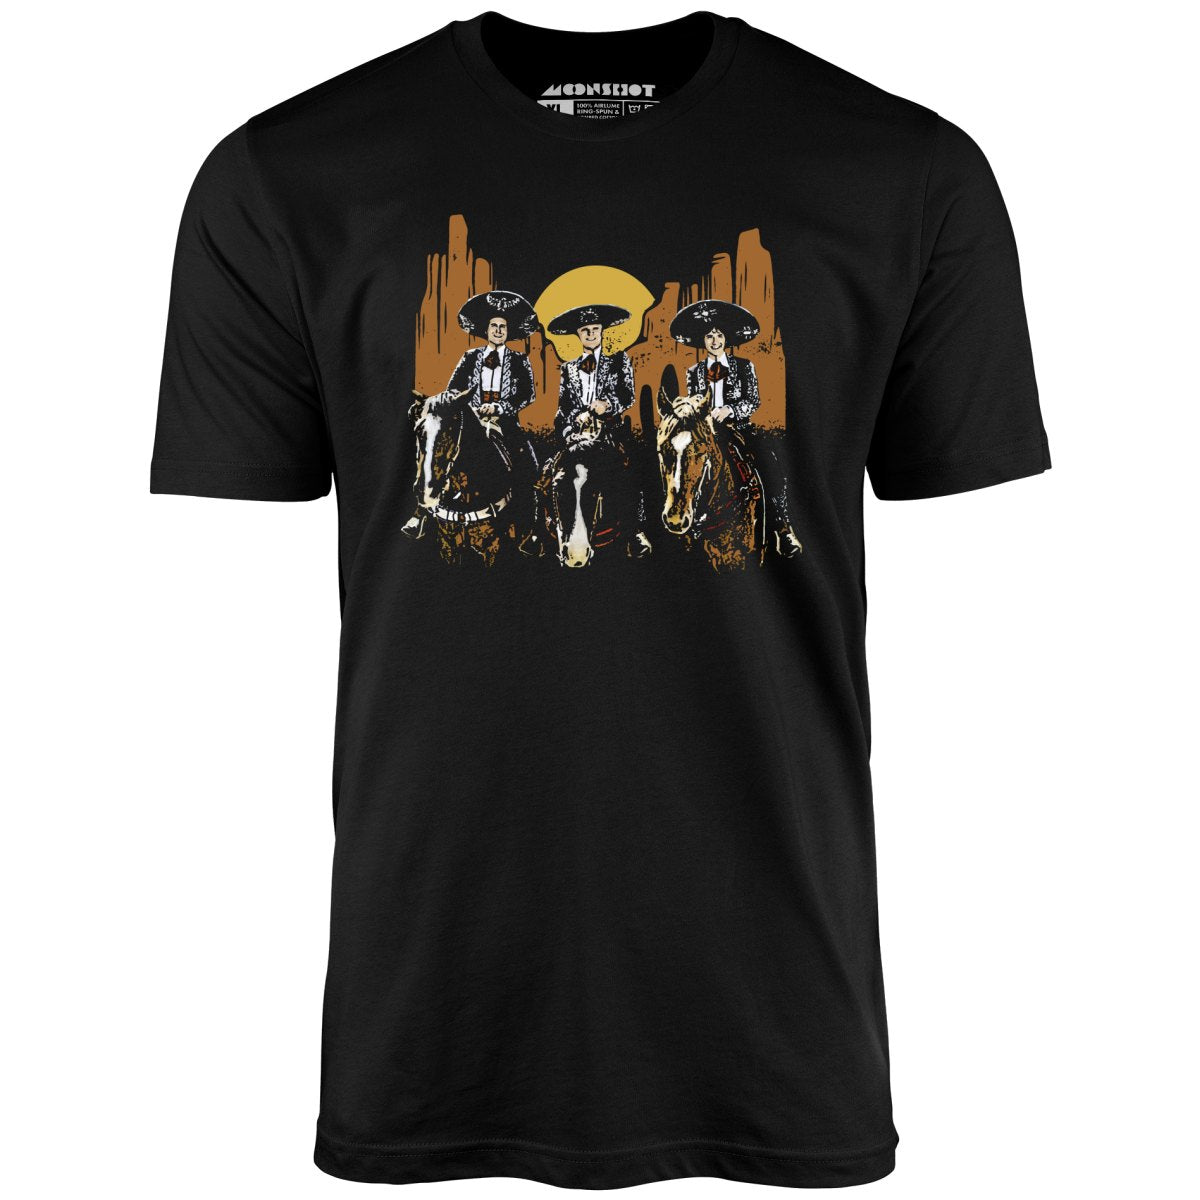 Three Amigos Tribute - Unisex T-Shirt